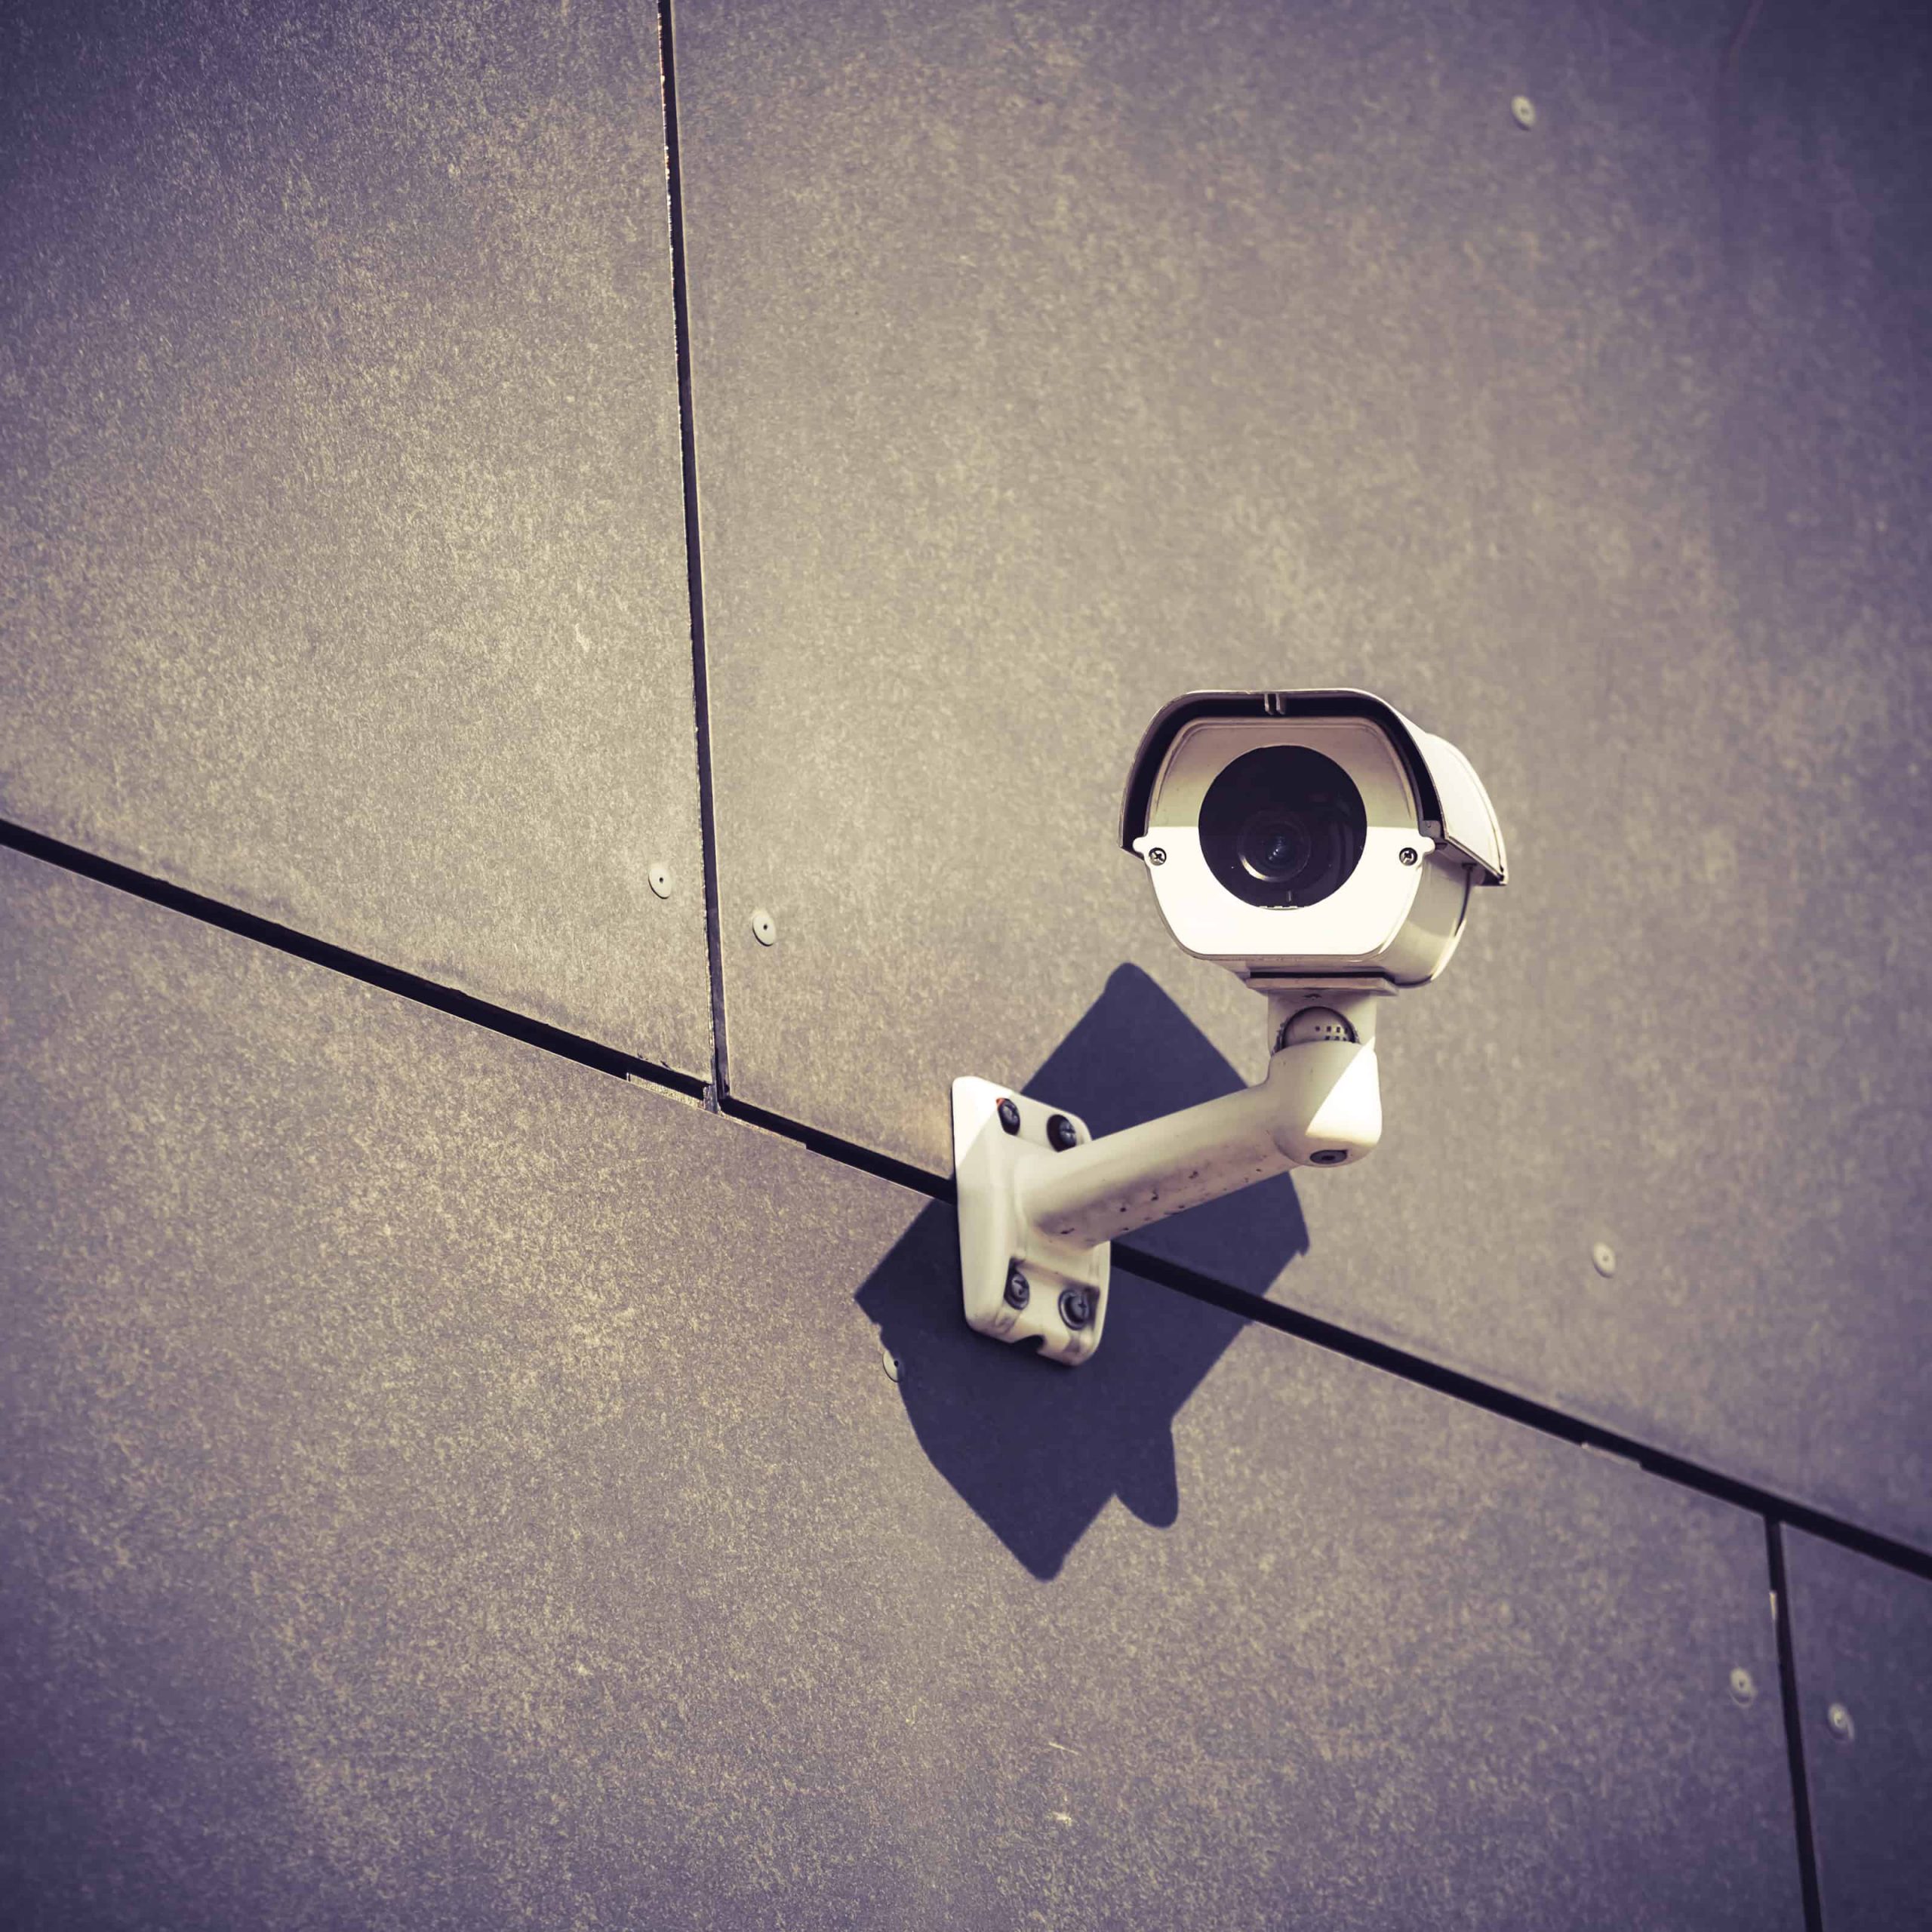 מצלמות נסתרות – מה אנחנו יכולים להשיג בעזרתן